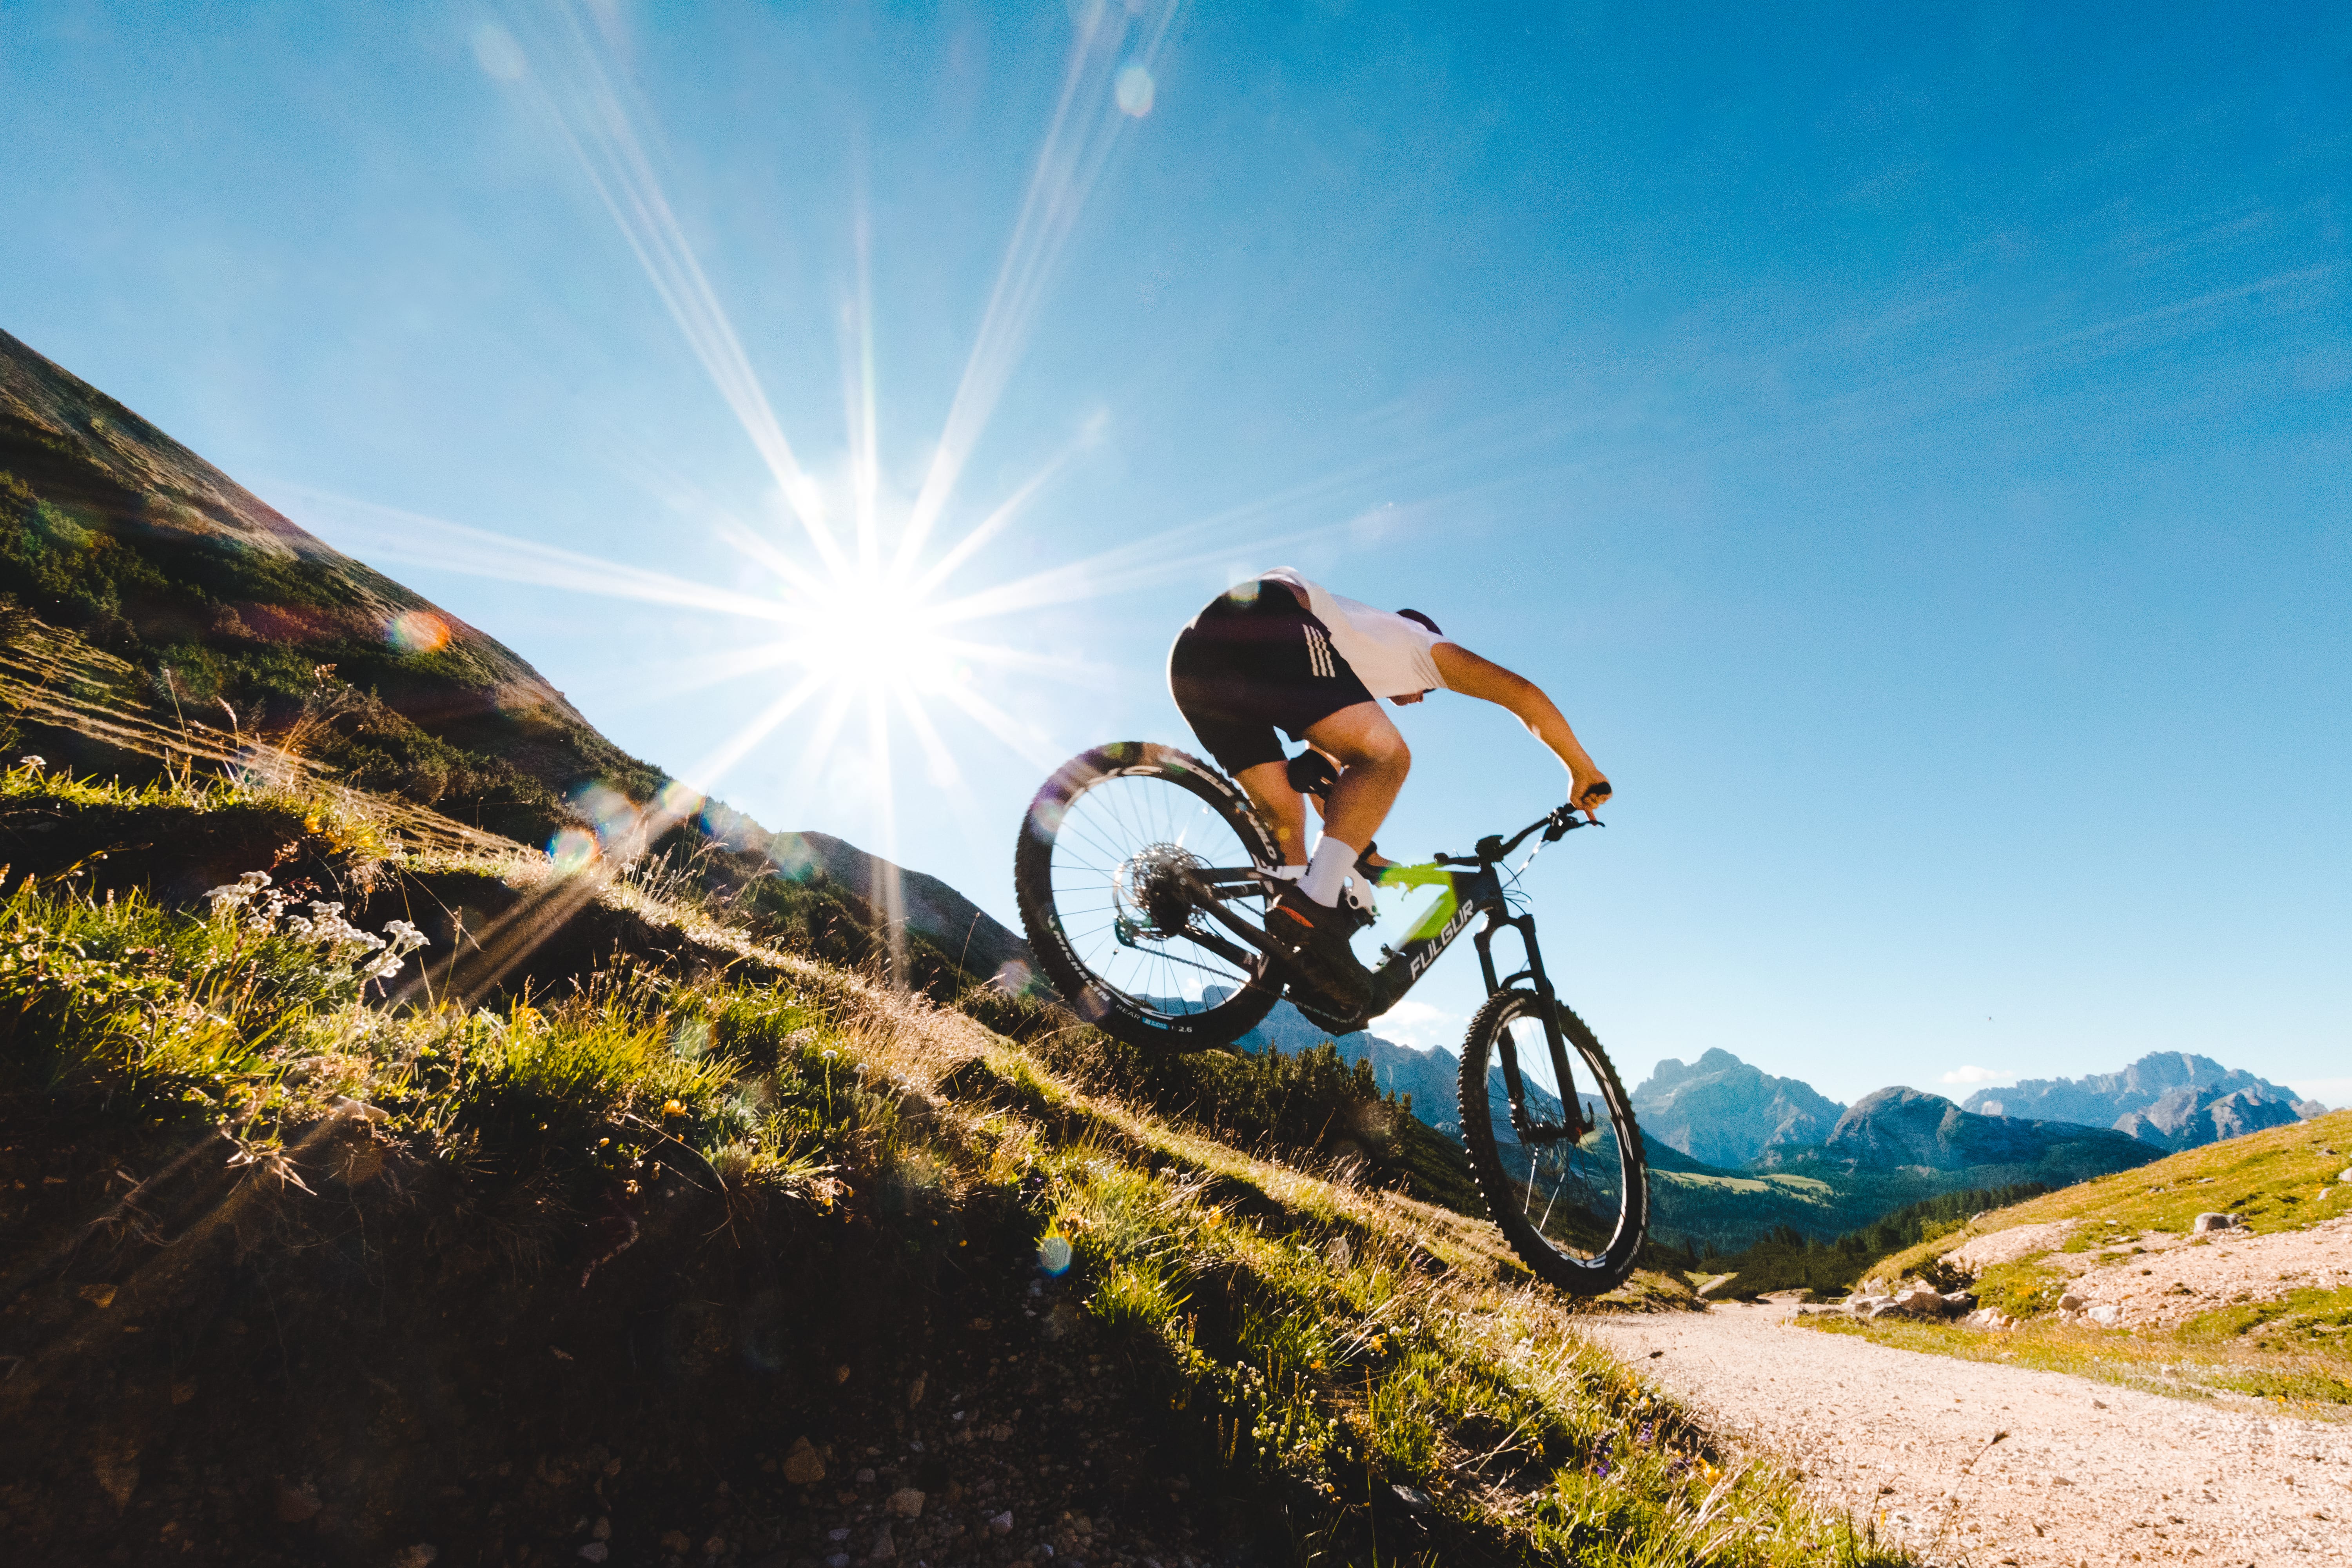 Una persona che fa downhill in mountain bike nelle Dolomiti, con le montagne alle spalle